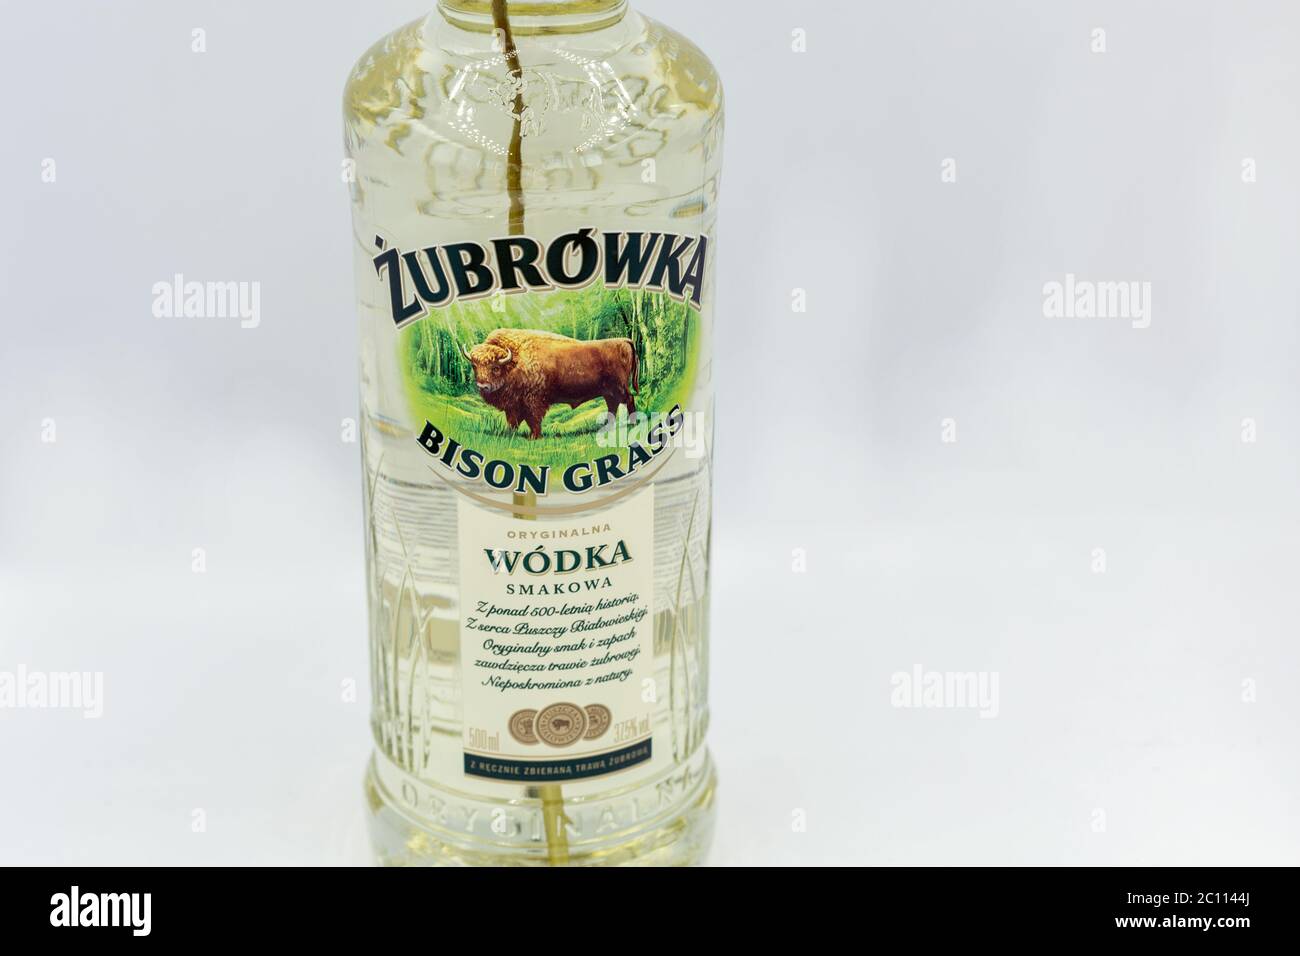 KIEW, UKRAINE - 06. JUNI 2020: Zubrowka Bison Grass Vodka Flasche Nahaufnahme vor weißem Hintergrund. Es ist ein aromatisierter polnischer Wodka Likör, der contai Stockfoto